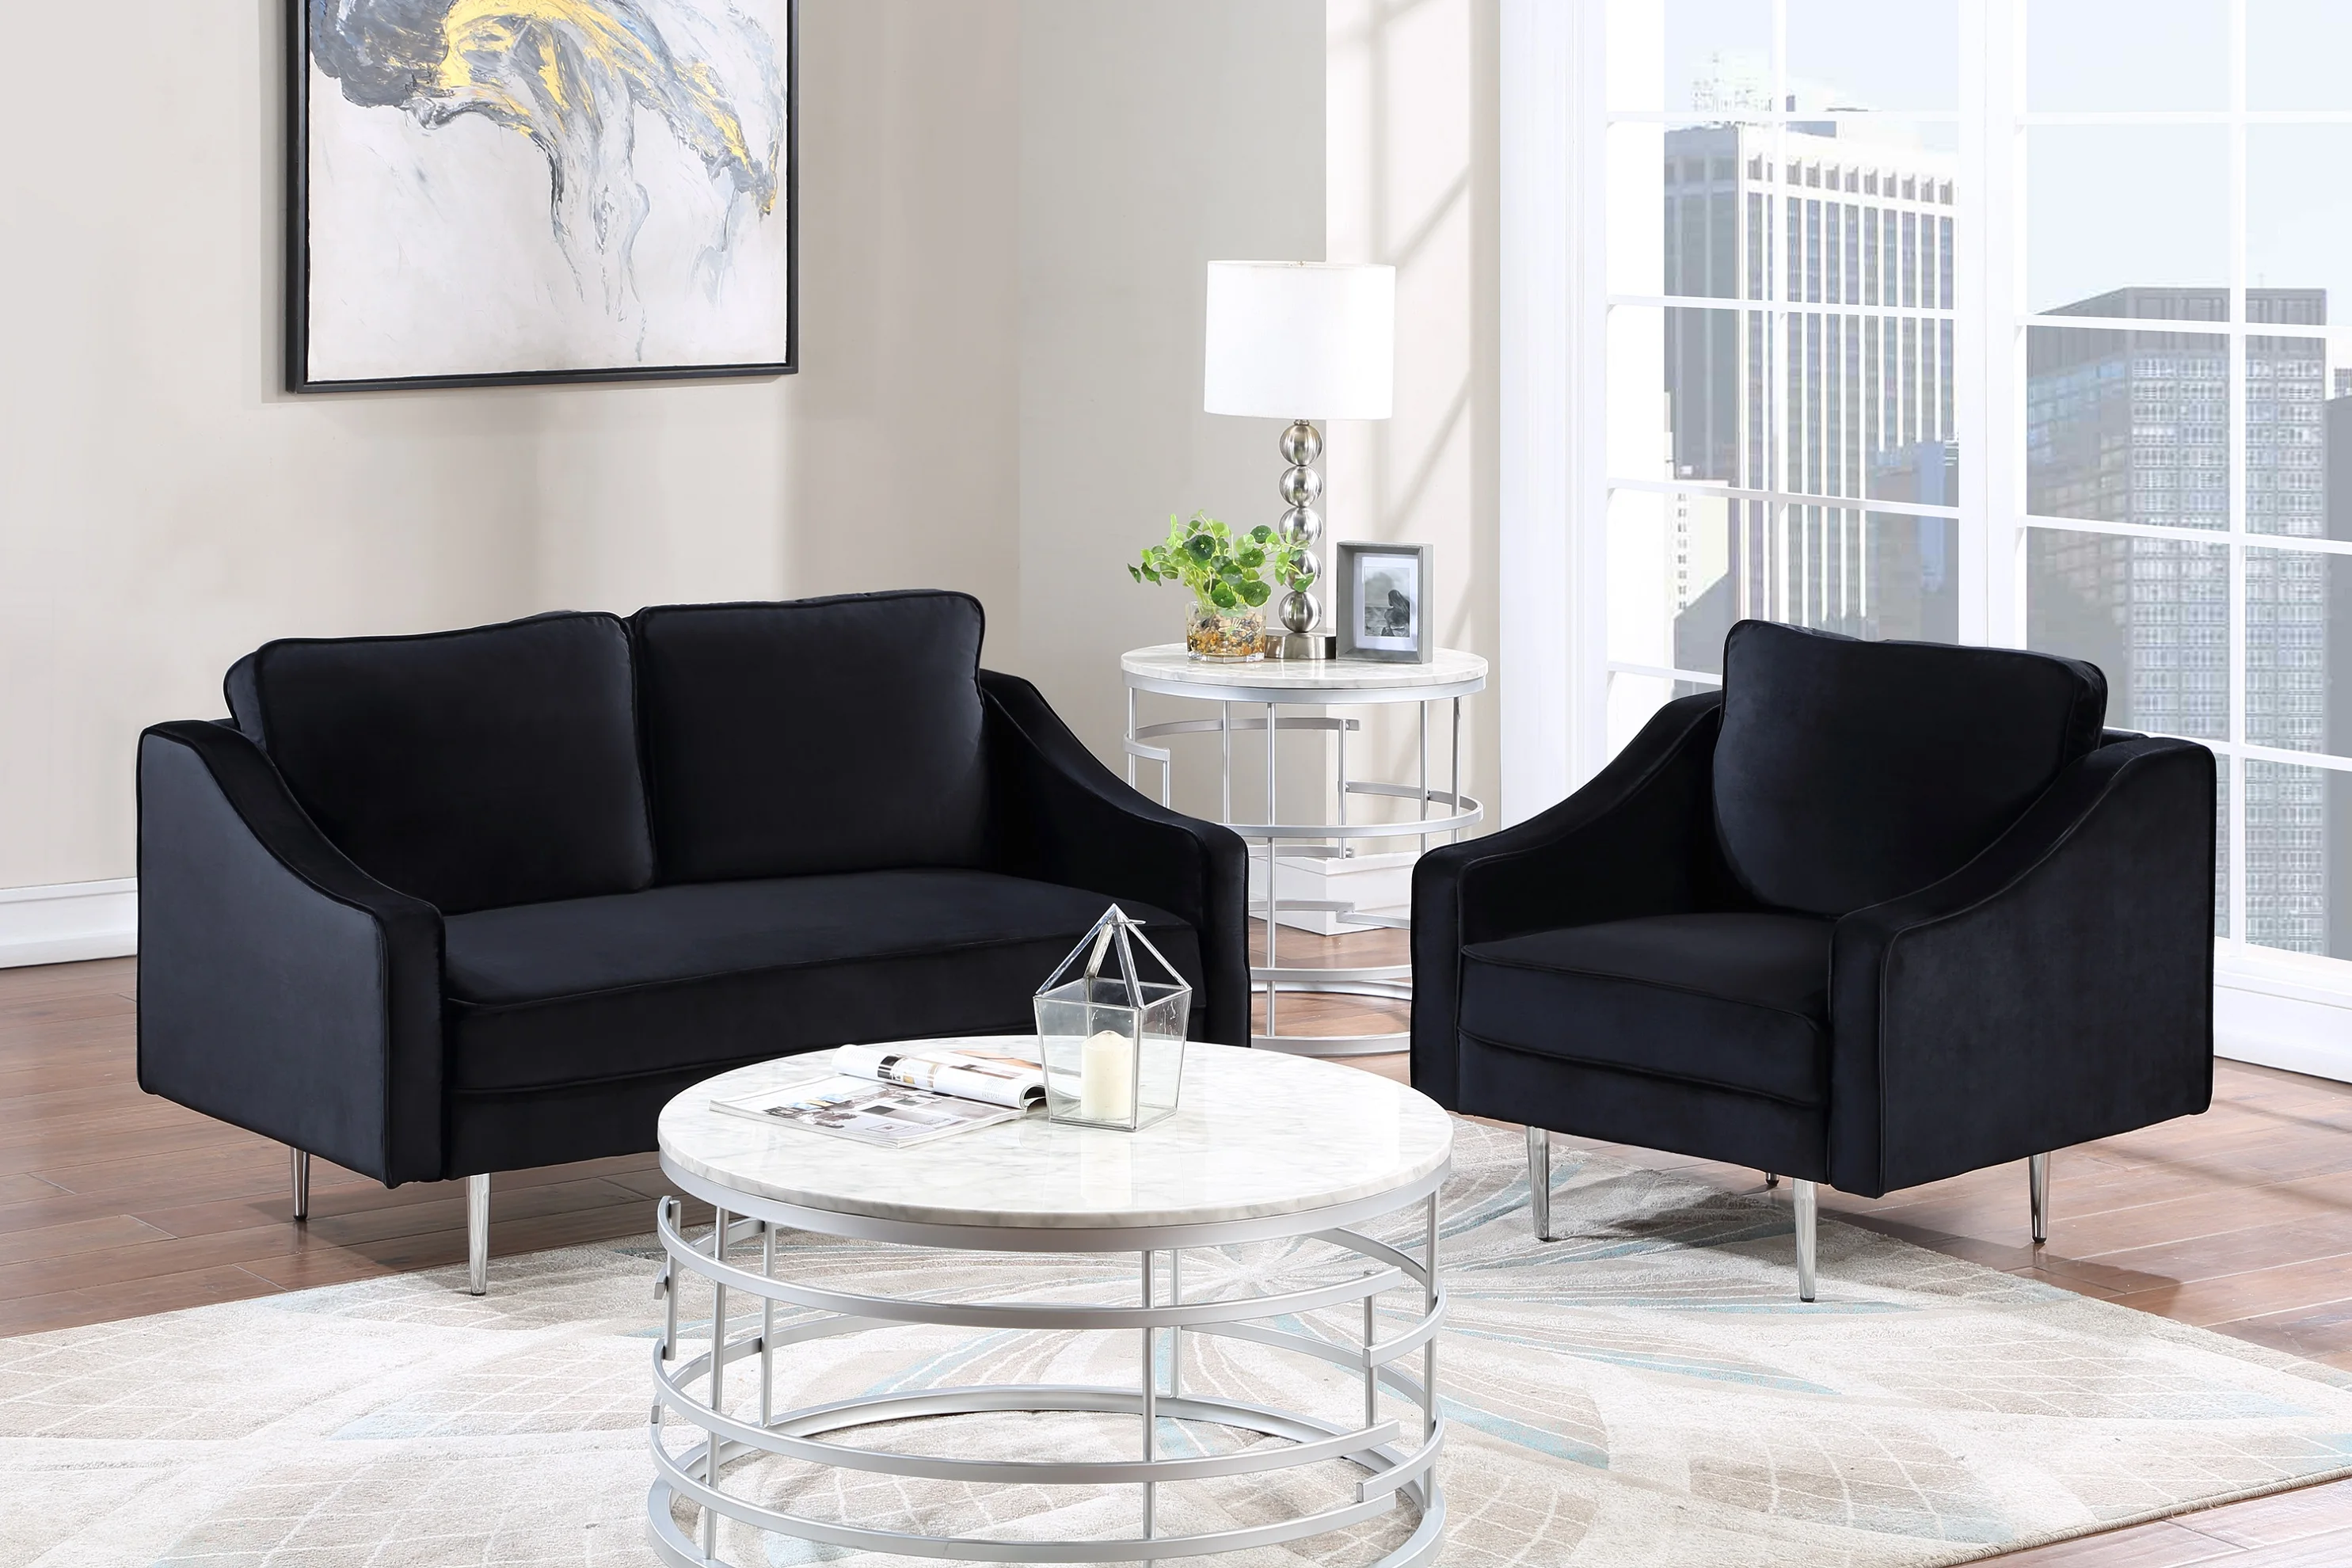 

Комплект диванов из 3 предметов, мебель в современном стиле, кресло с мягкой обивкой, кресла для хозяйки и три места для дома или офиса (1 + 2 ме...